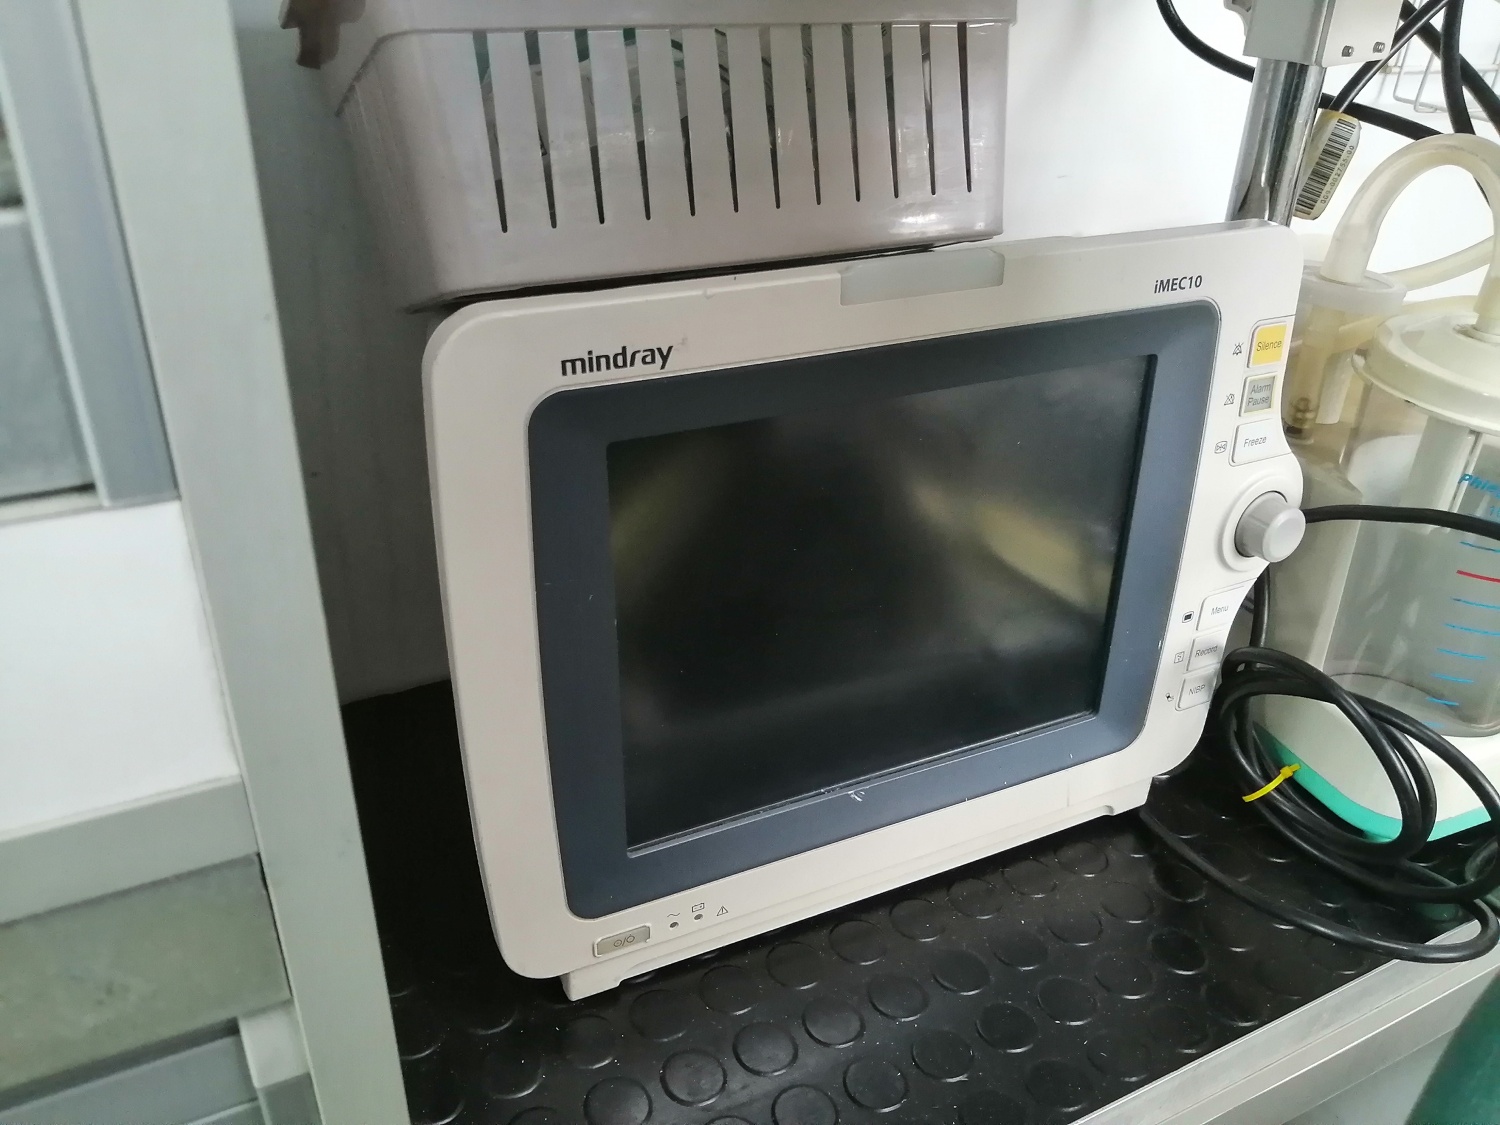 монитор прикроватный многофункциональный медицинский armed pc 900sn